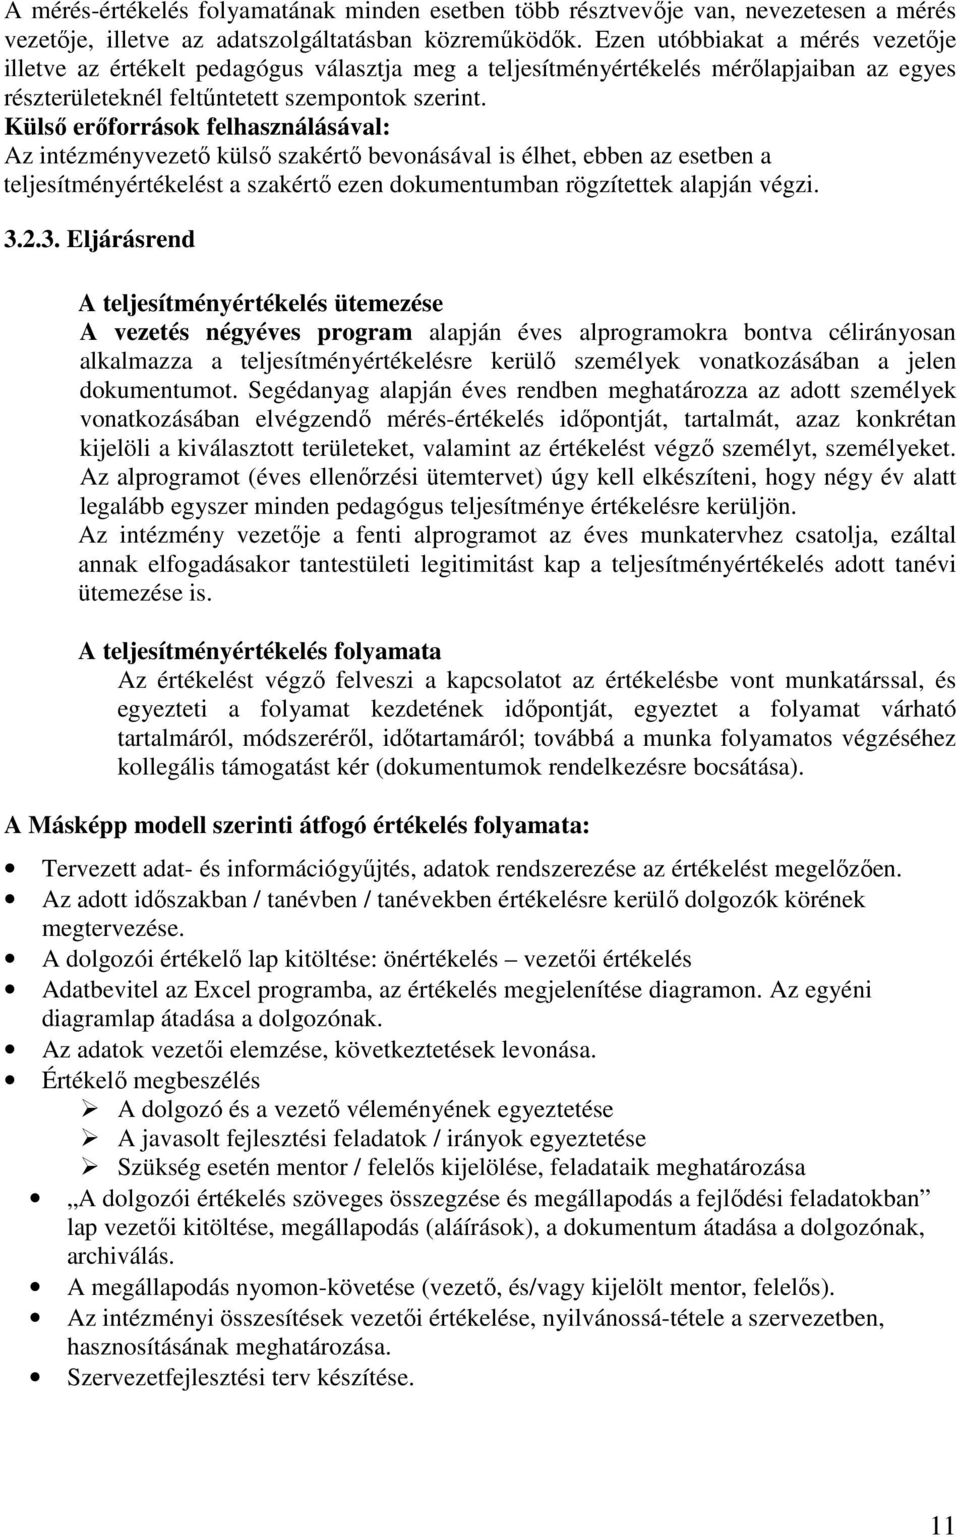 Külsı erıforrások felhasználásával: Az intézményvezetı külsı szakértı bevonásával is élhet, ebben az esetben a teljesítményértékelést a szakértı ezen dokumentumban rögzítettek alapján végzi. 3.